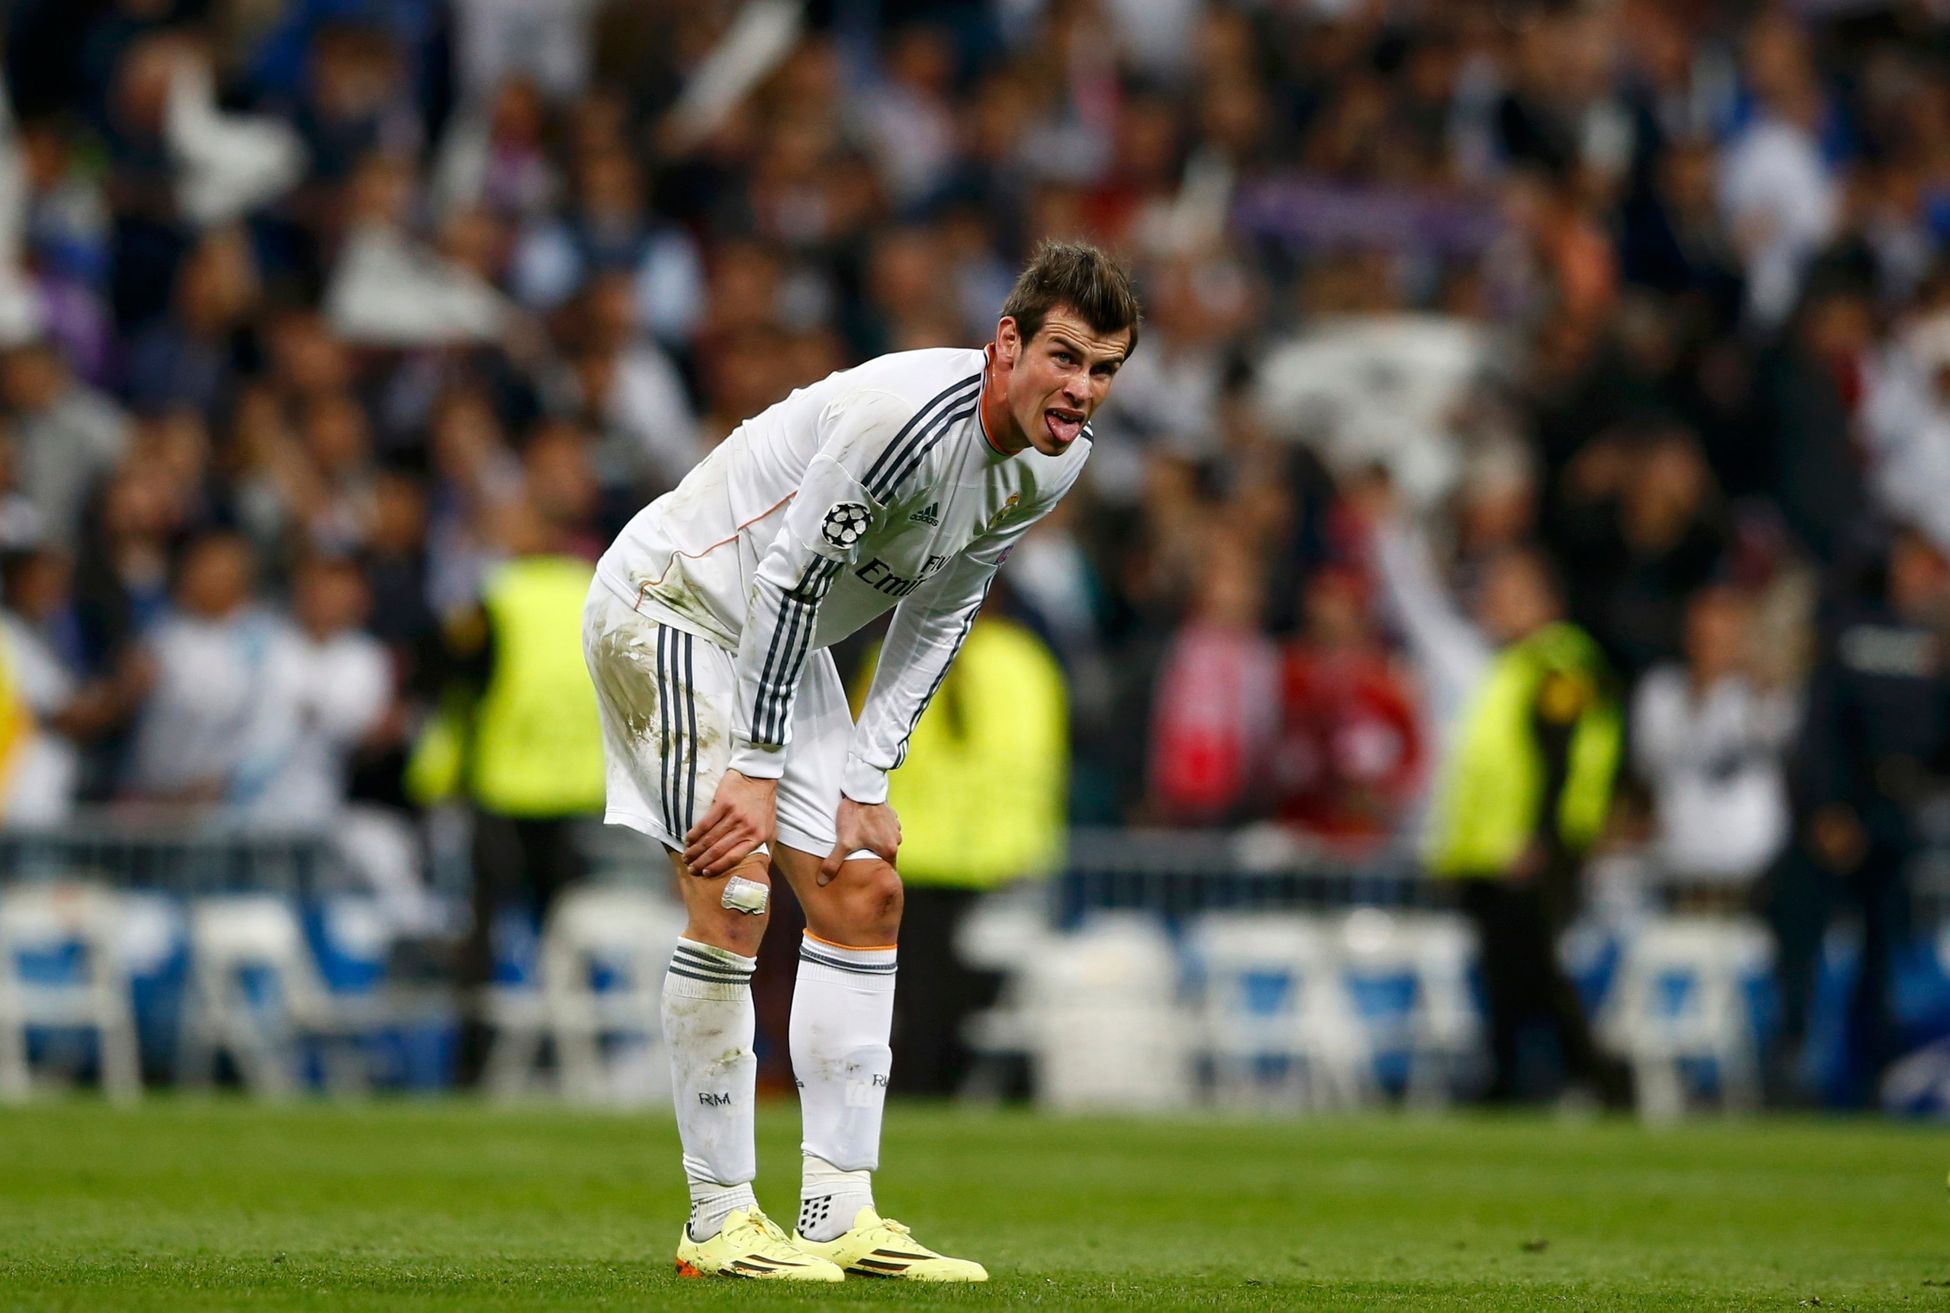 LM, Real-Bayern: Graeth Bale